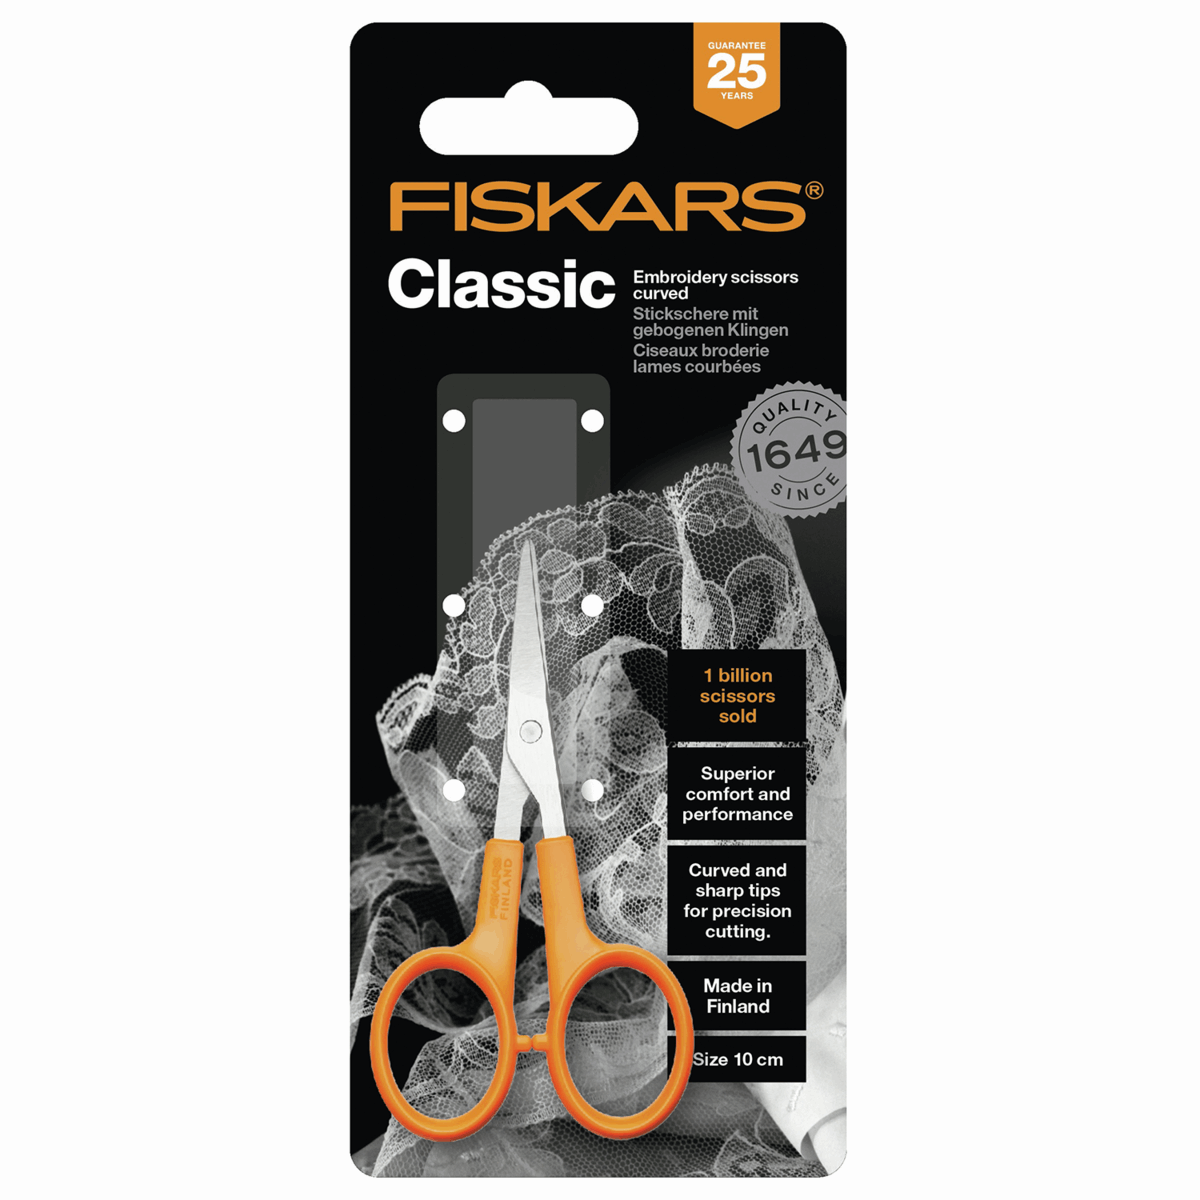 Fiskars 8 & 5 Essential Sewing Scissors in Black Marble & Gray